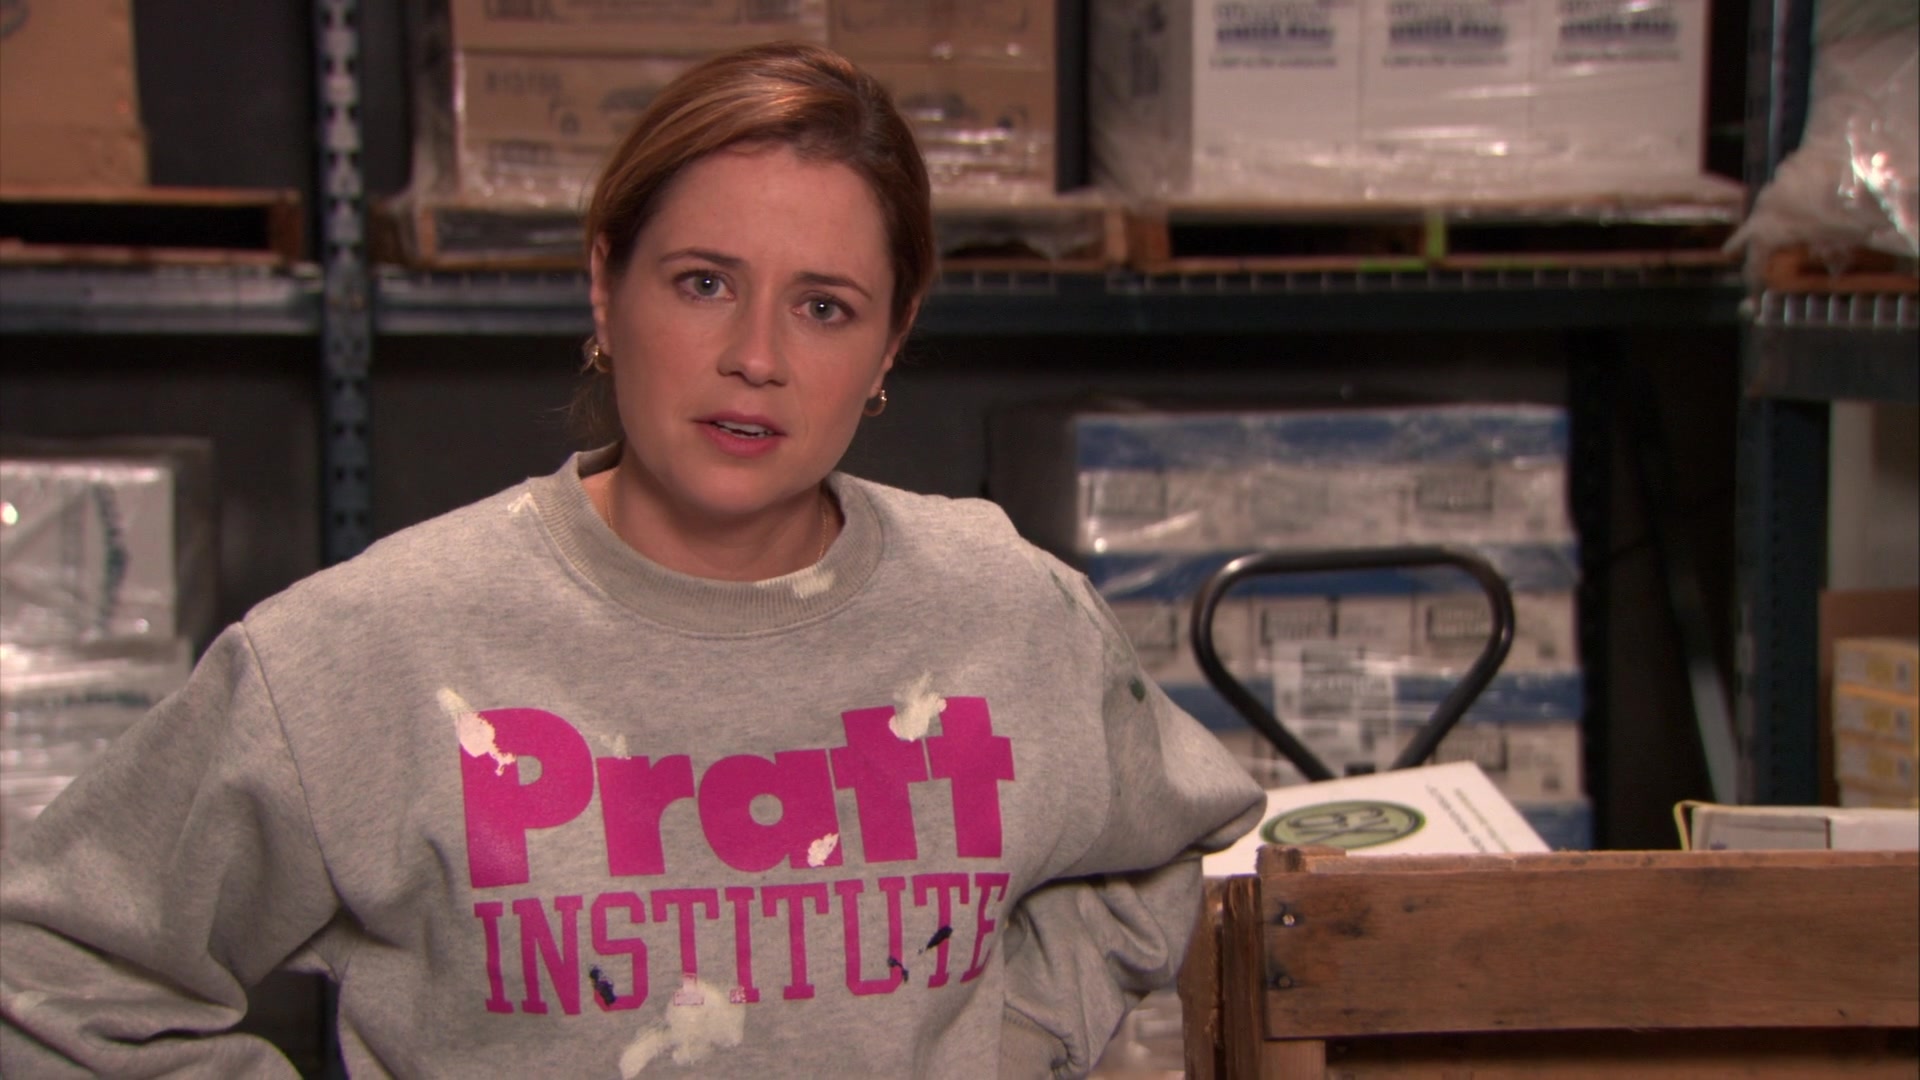 Pratt Institute Sweatshirt Worn By Jenna Fischer (Pam Beesly) In The Office...